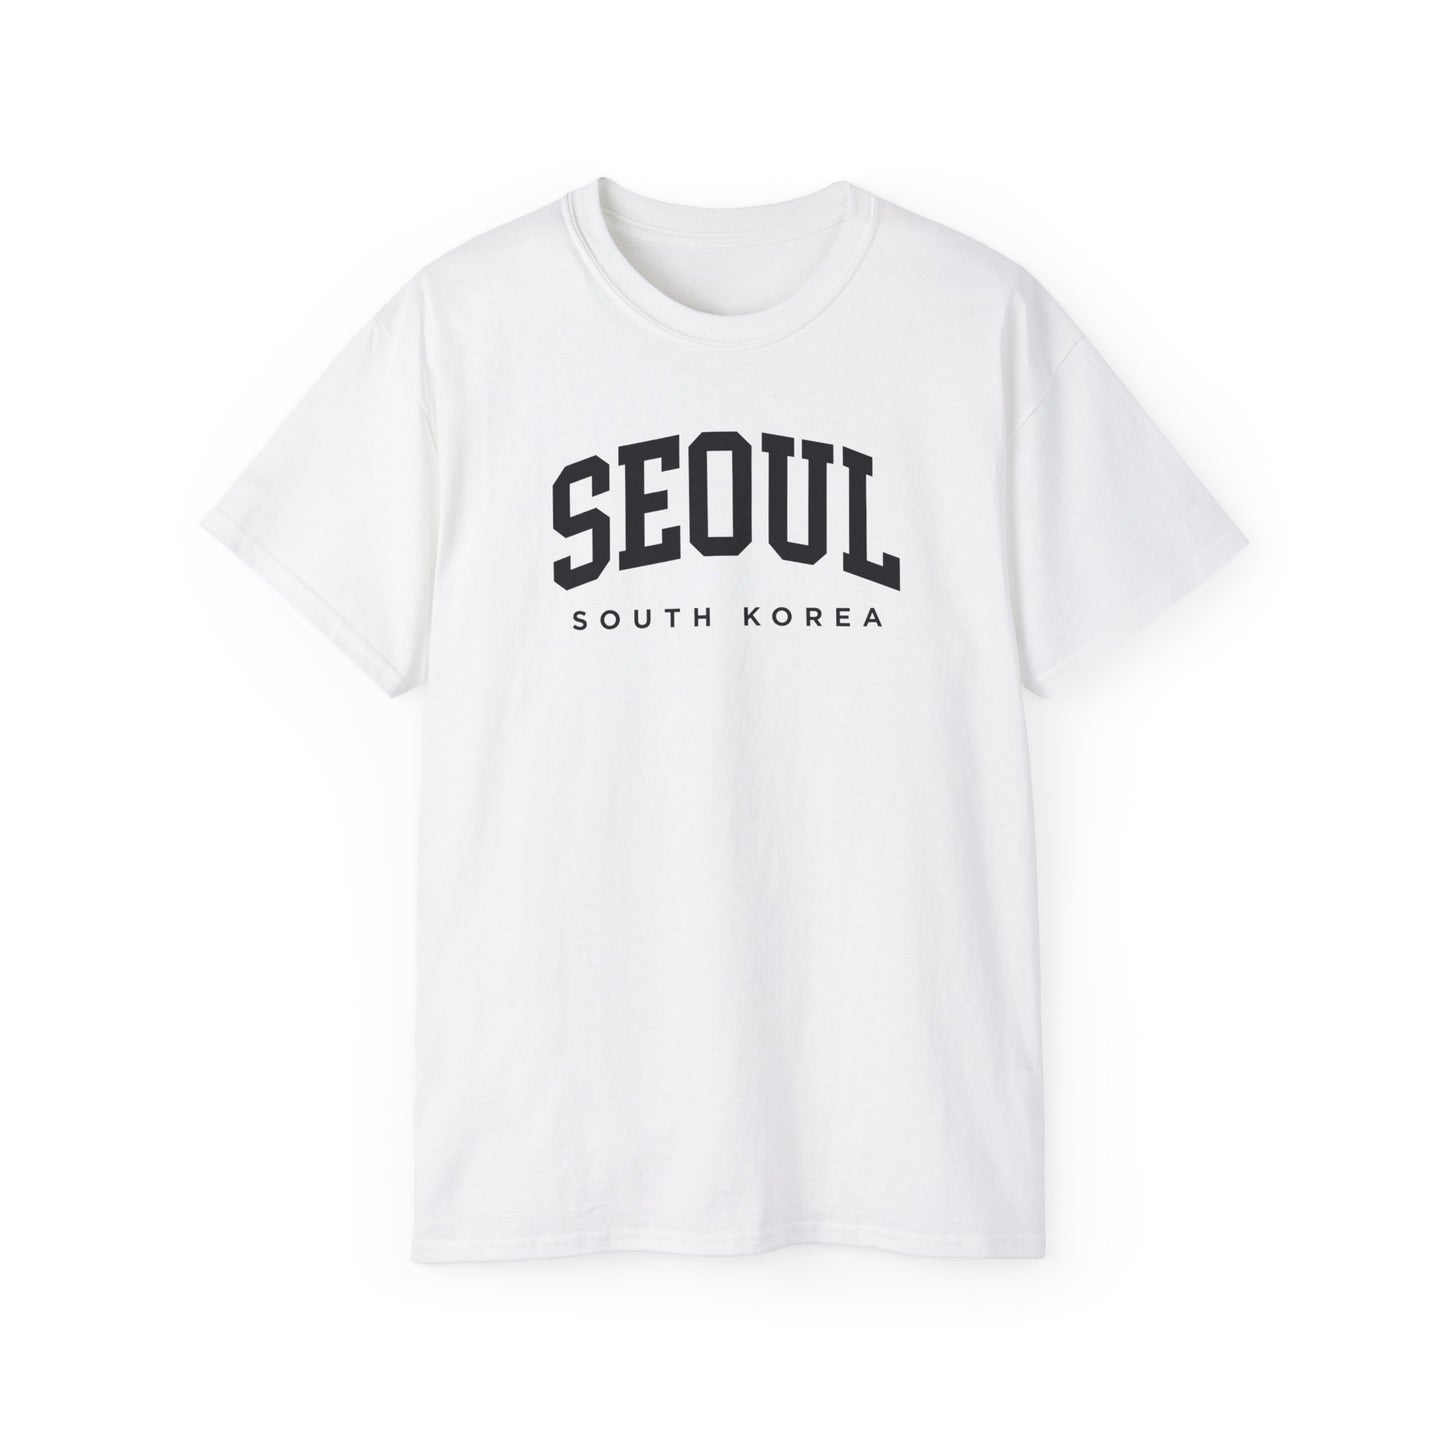 Seoul South Korea Tee